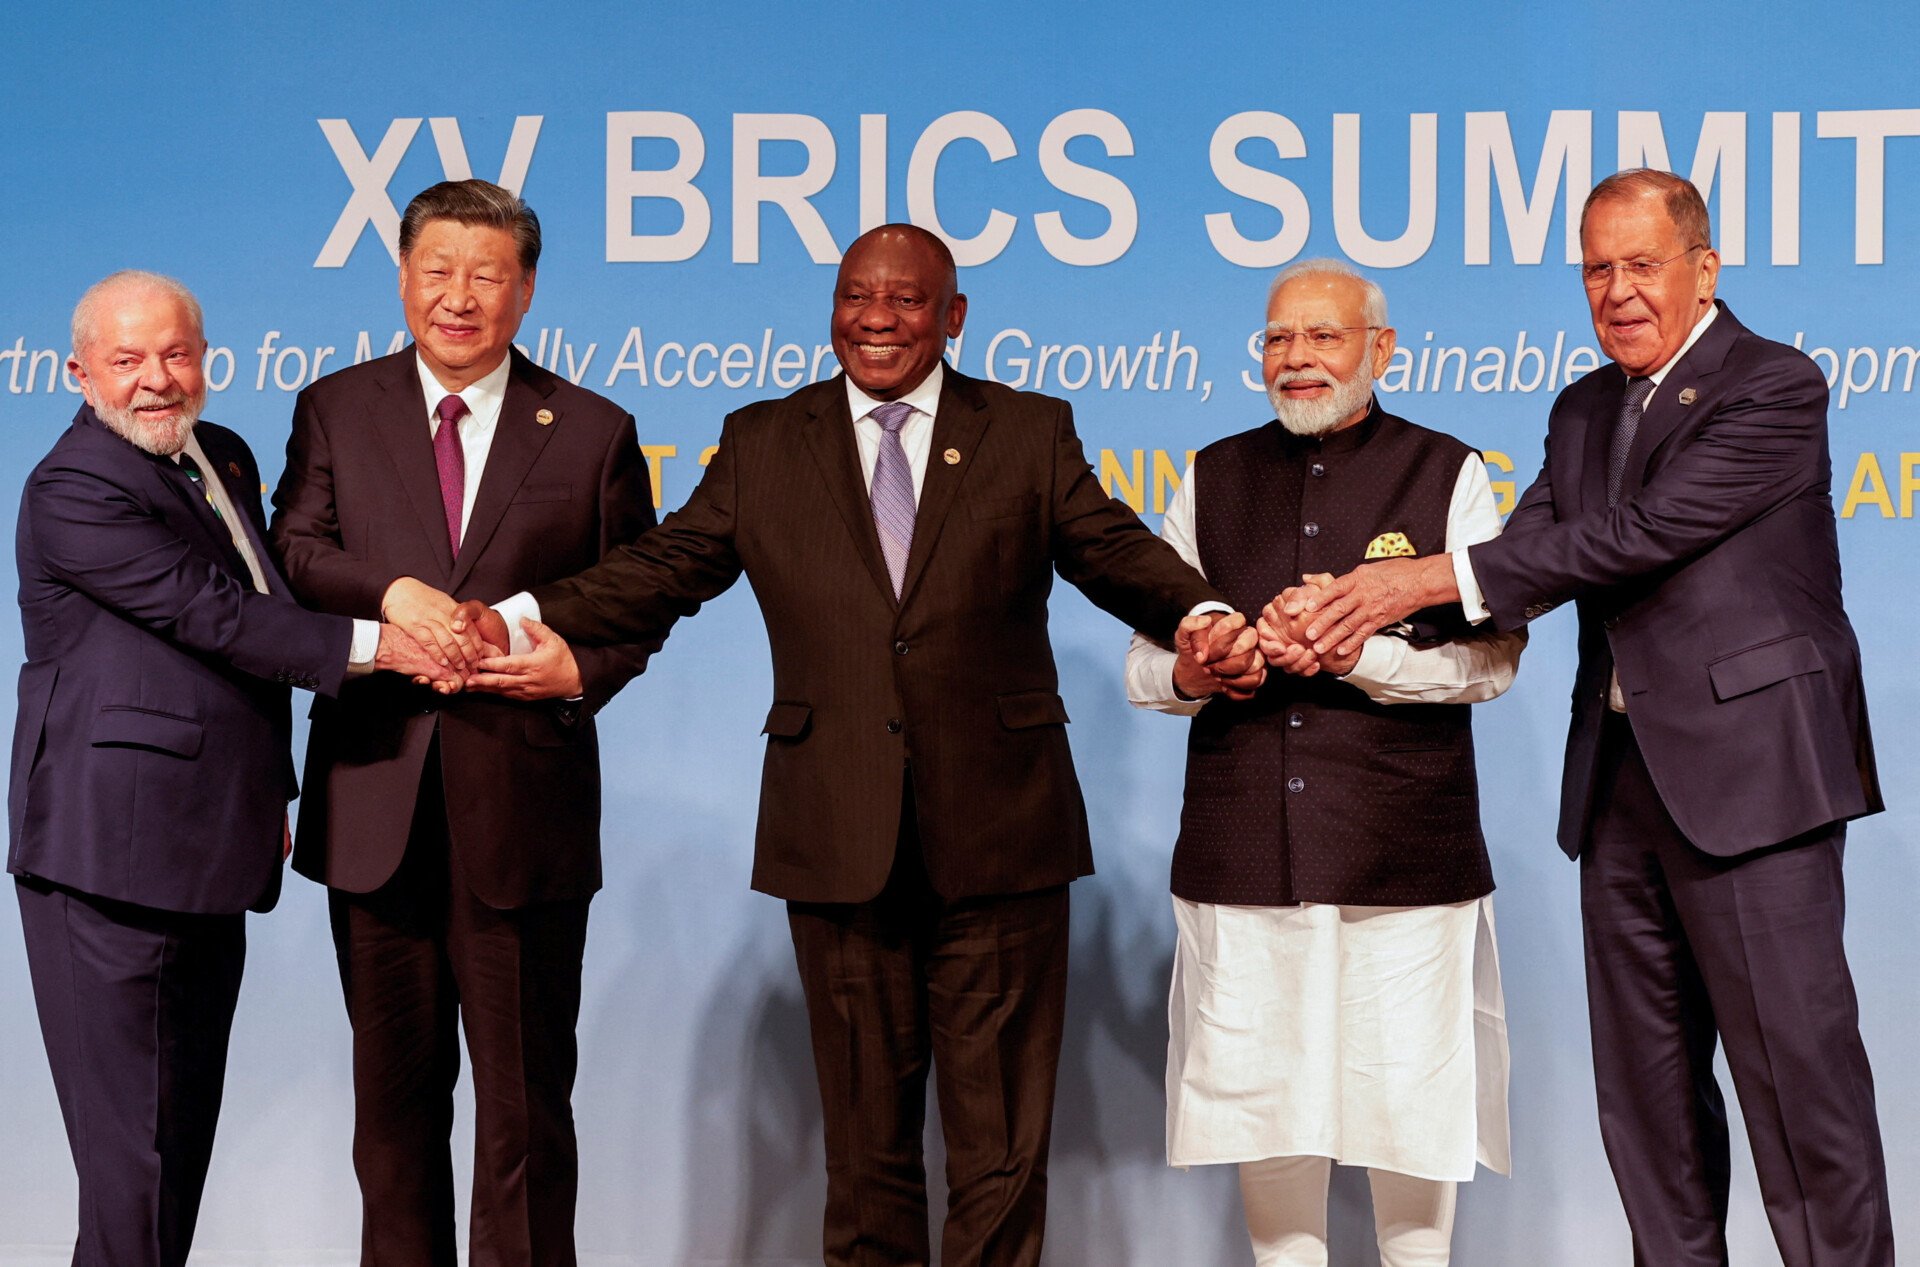 Οι BRICS αυξάνονται και ελέγχουν παγκοσμίως, υδρογονάνθρακες και μέταλλα